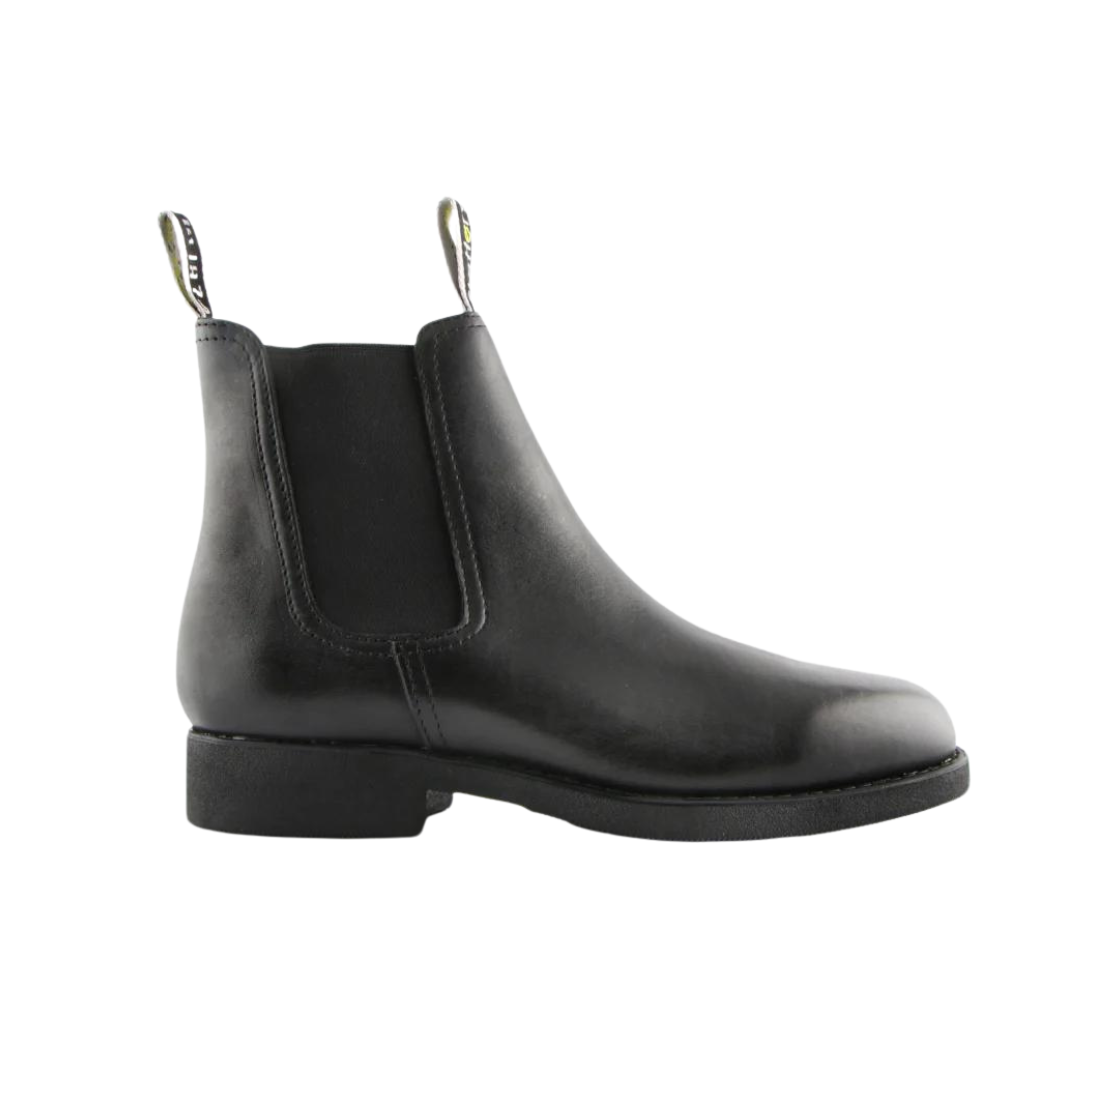 Slatters Arizona Leather Boot - Black 8 Black Mens Footwear by Slatters | The Bloke Shop